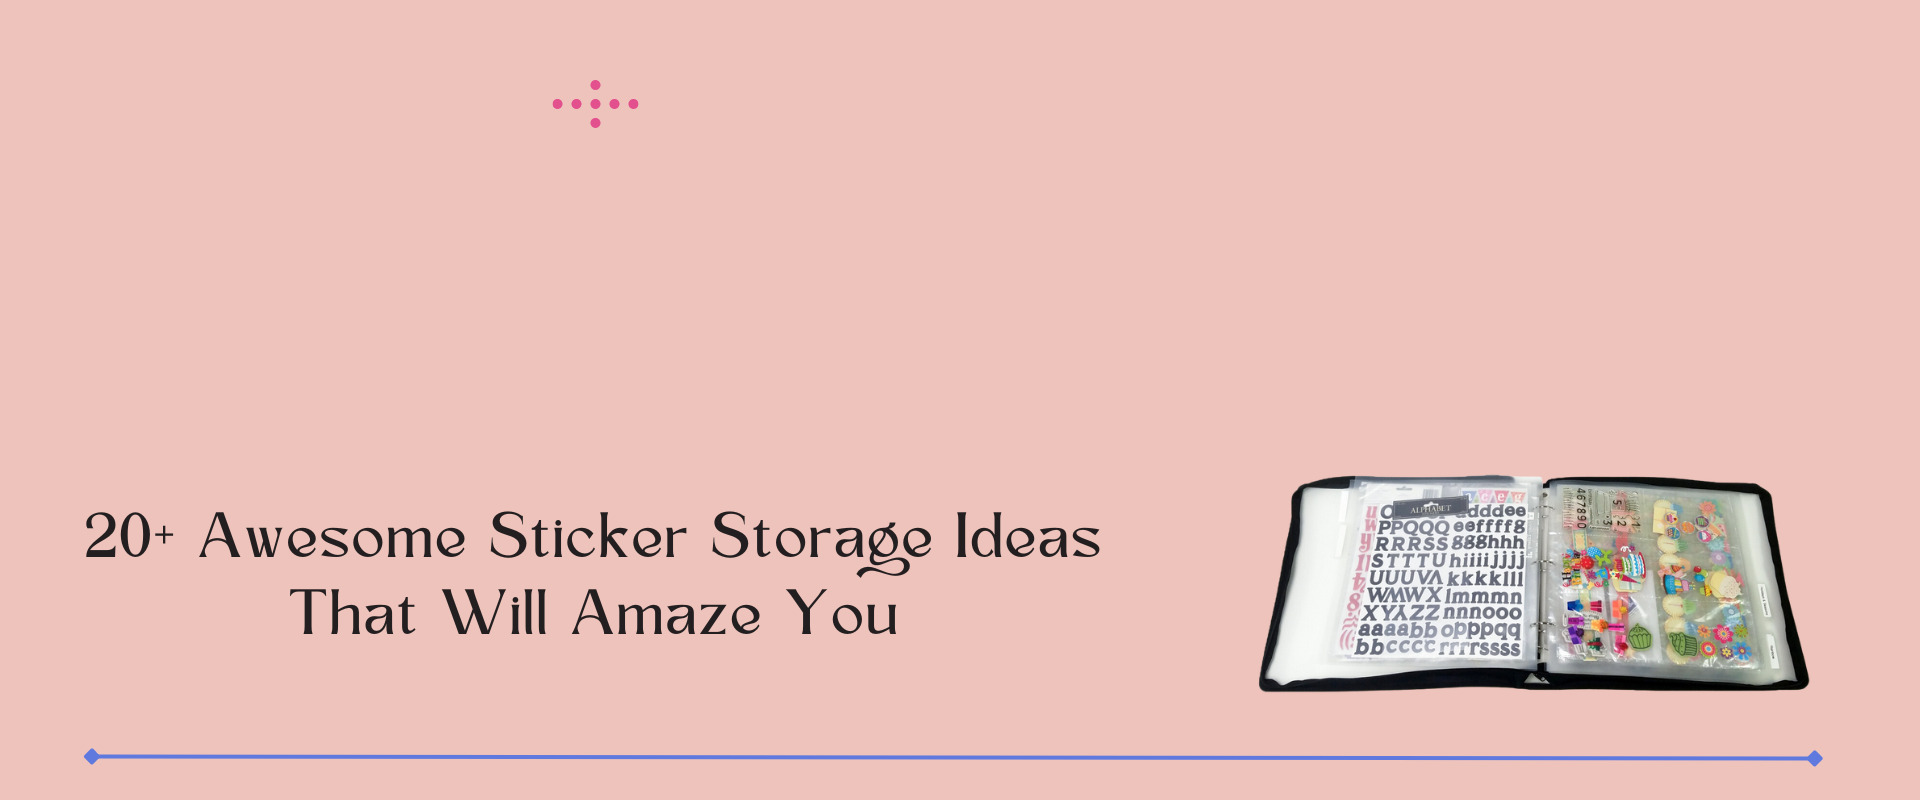 20+ Awesome Sticker Storage Ideas That Will Amaze You